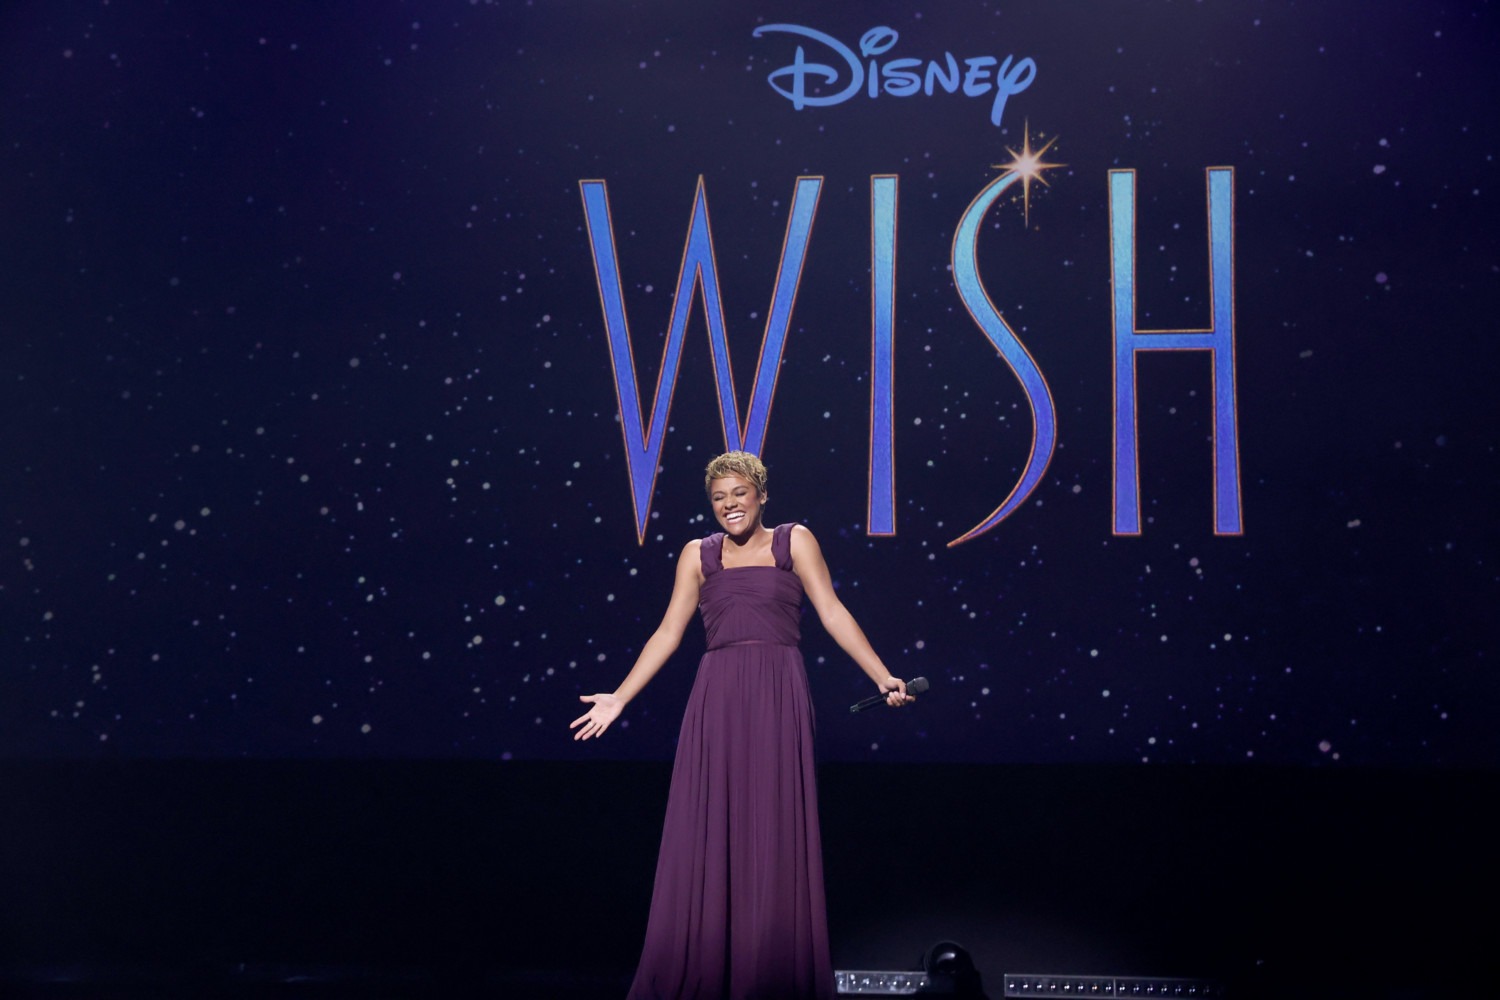 wish film by Disney+